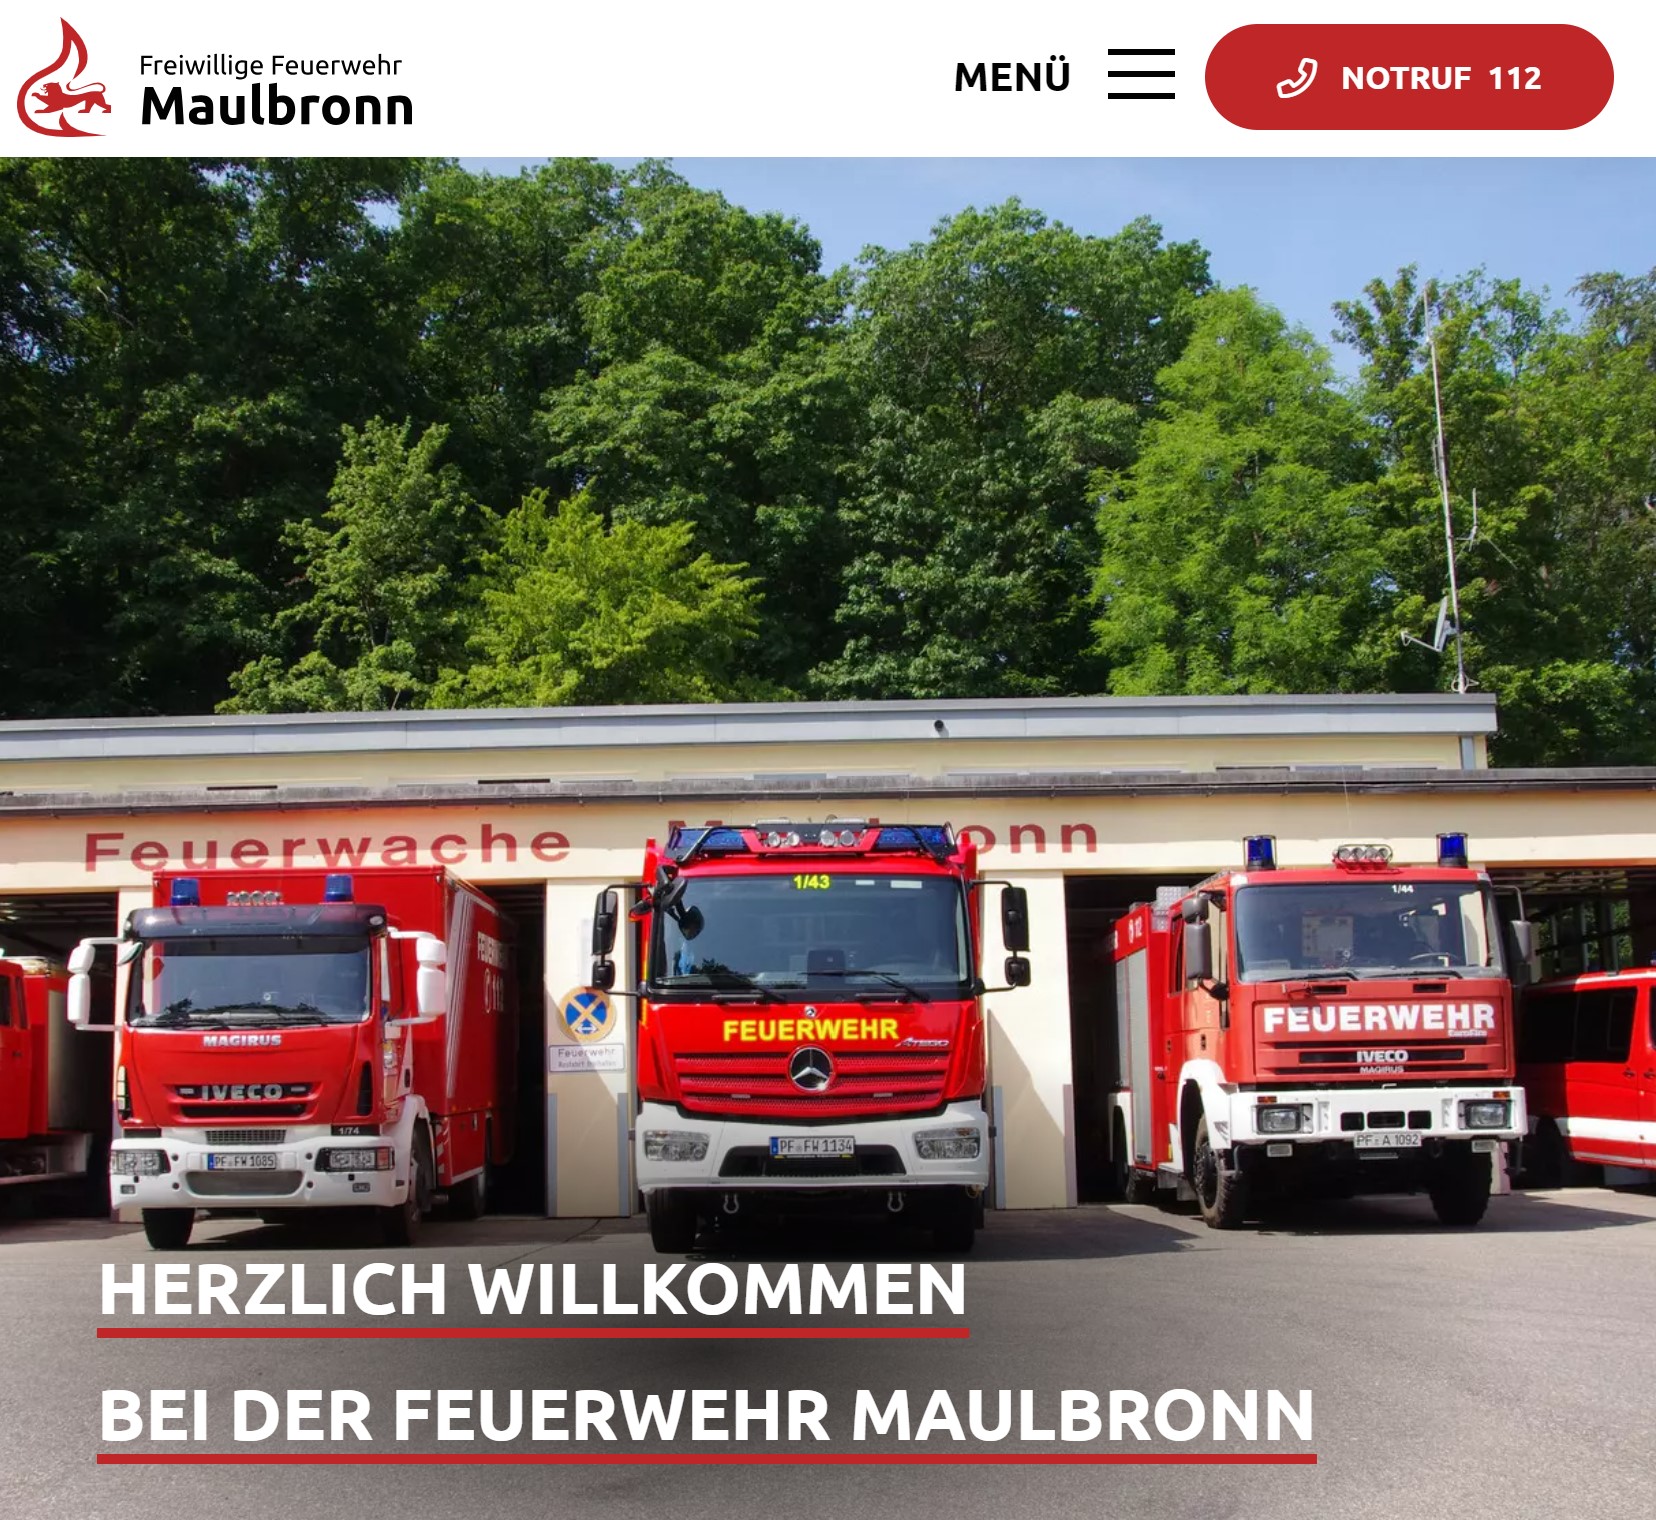 Foto der Startseite der Feuerwehr, mit Foto von Feuerwehrautos, Menü und Notrufnummer